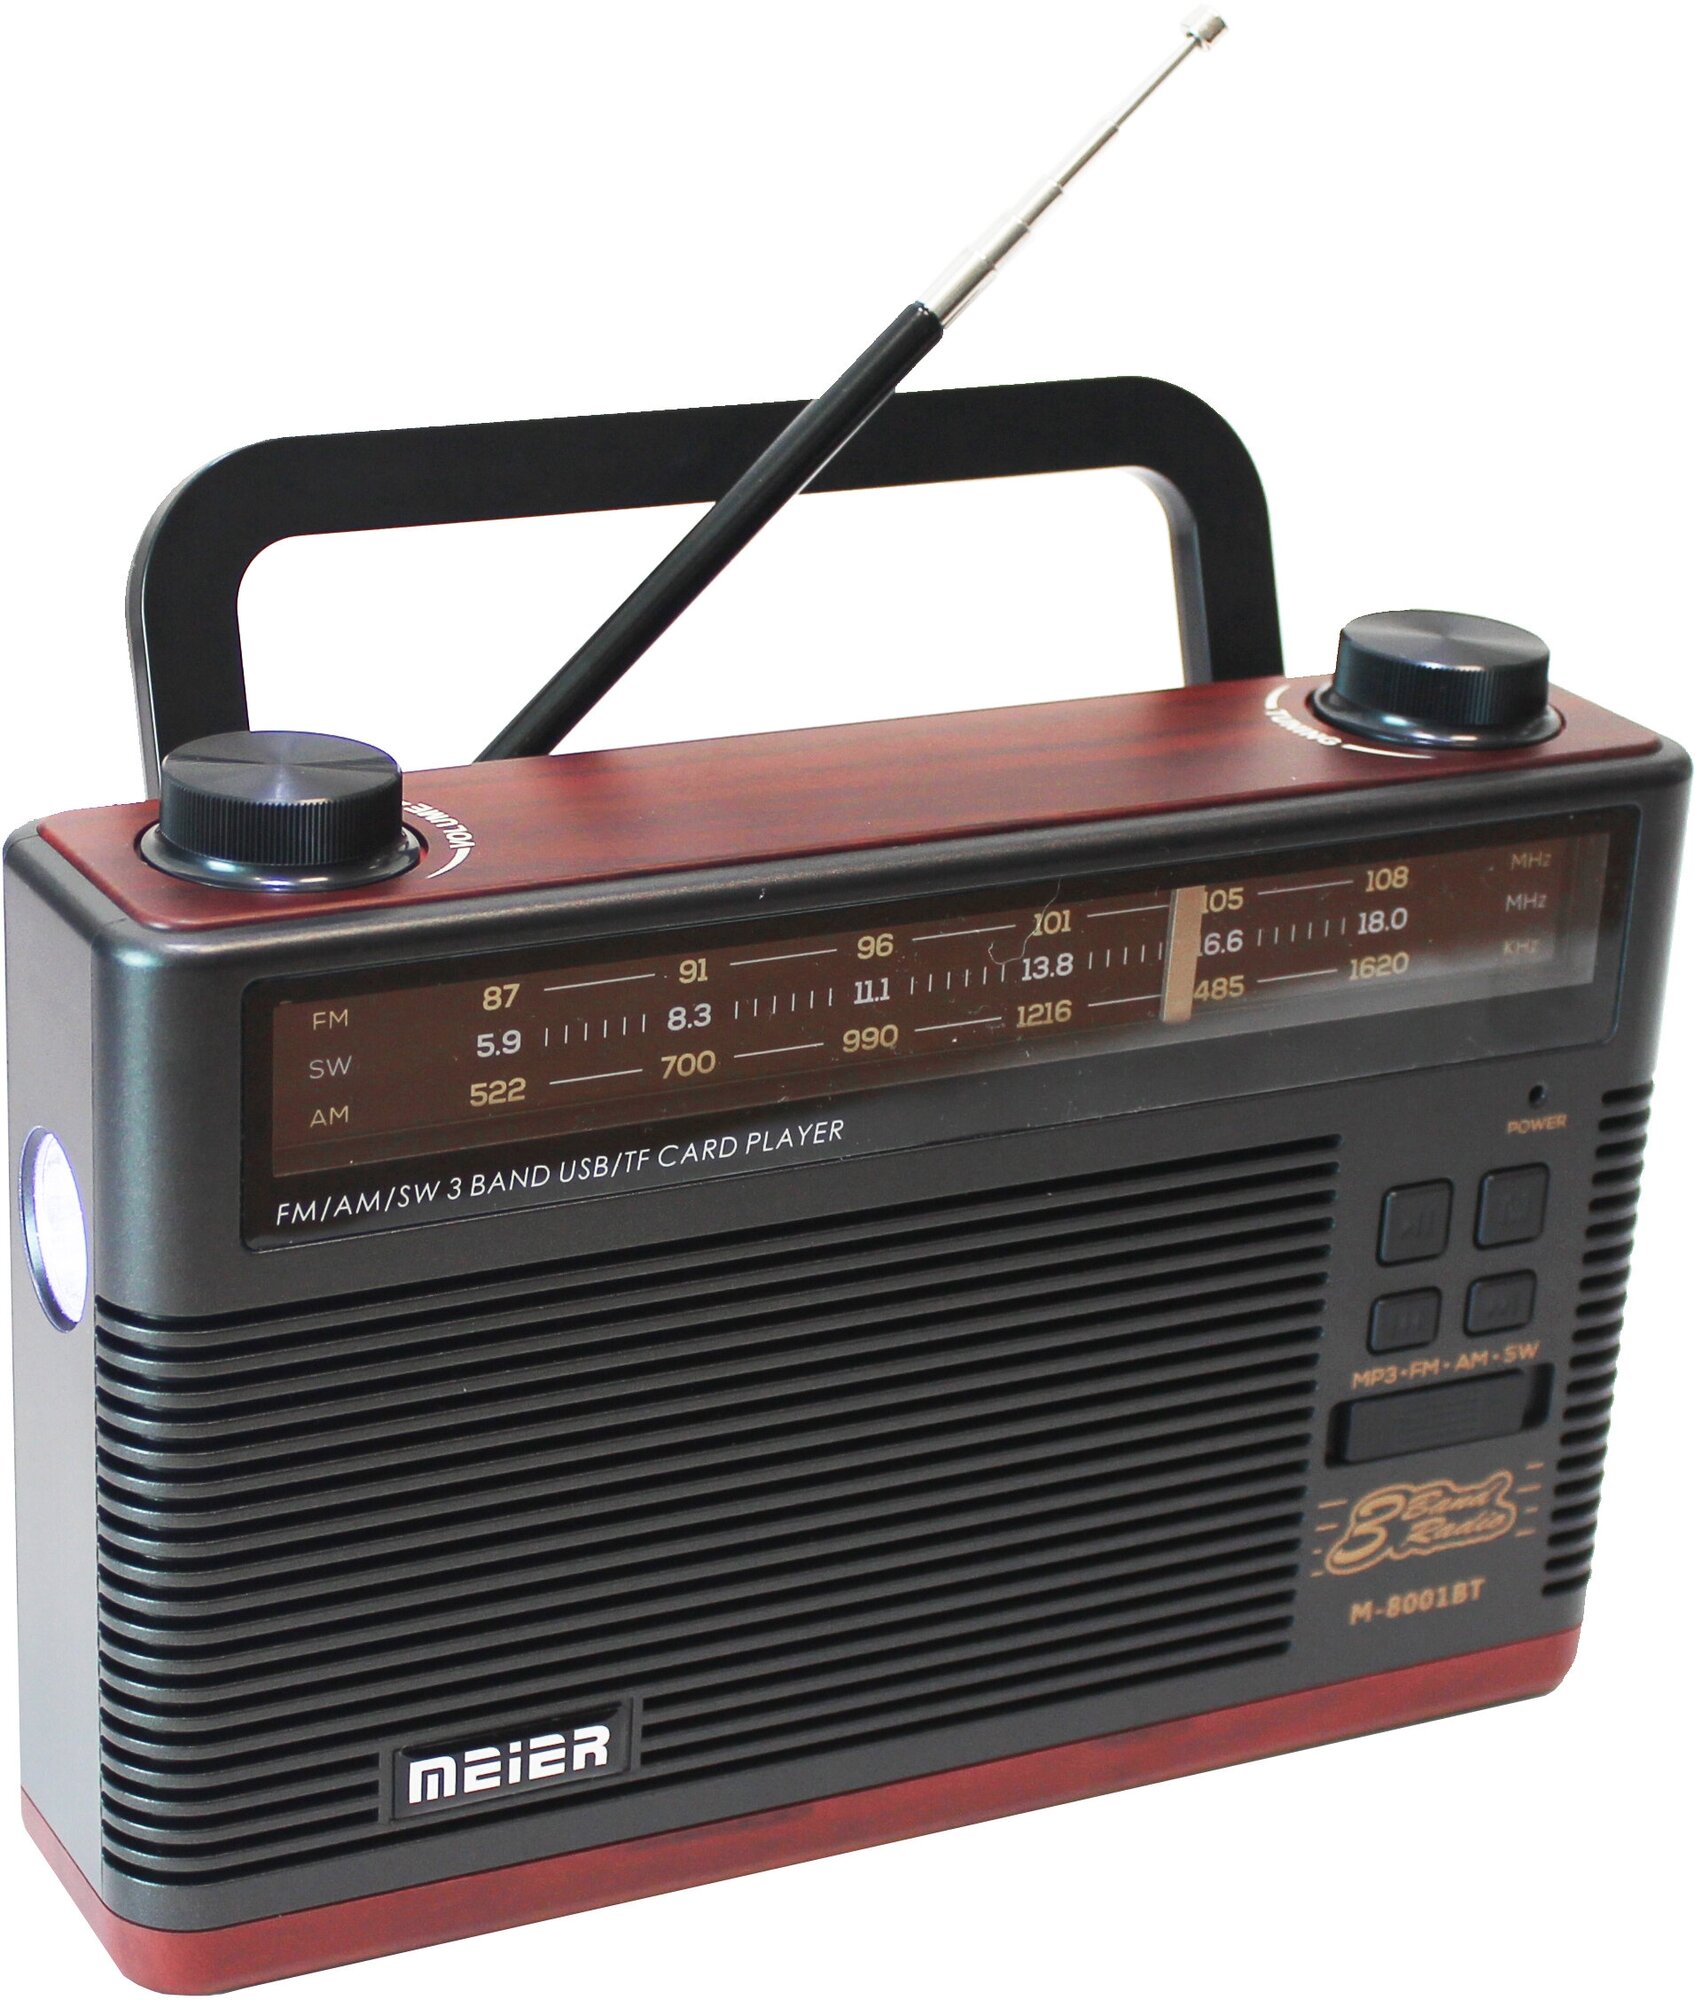 Bluetooth радиоприемник в стиле "Ретро" со сменным аккумулятором и фонариком Meier M-8001BT Red